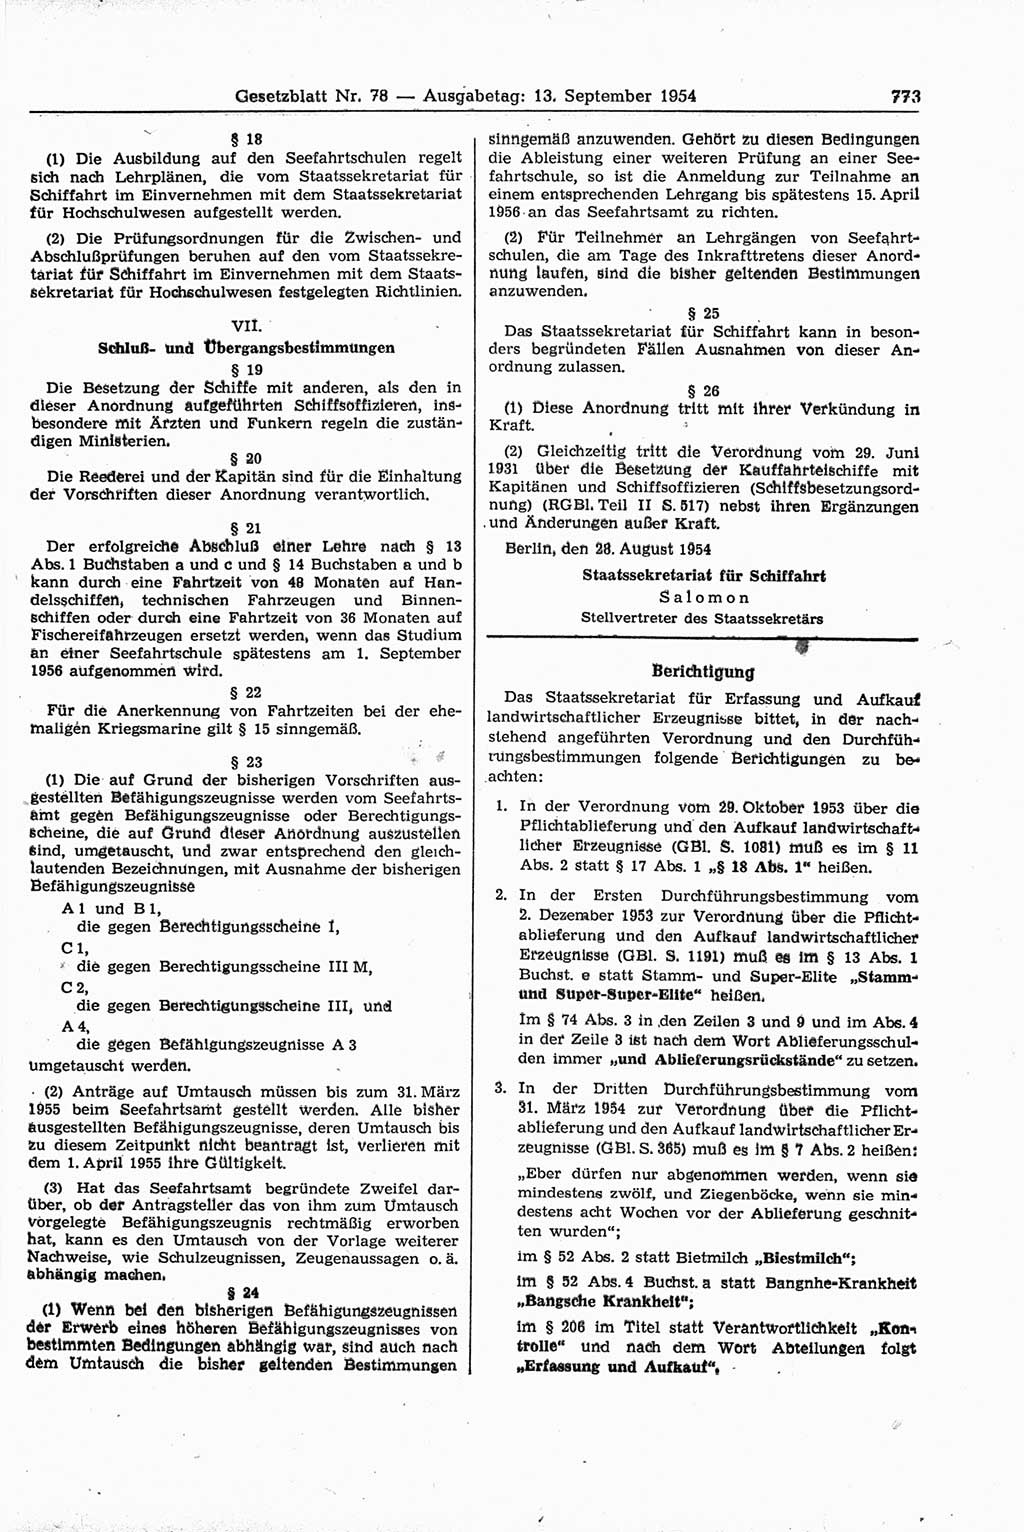 Gesetzblatt (GBl.) der Deutschen Demokratischen Republik (DDR) 1954, Seite 773 (GBl. DDR 1954, S. 773)